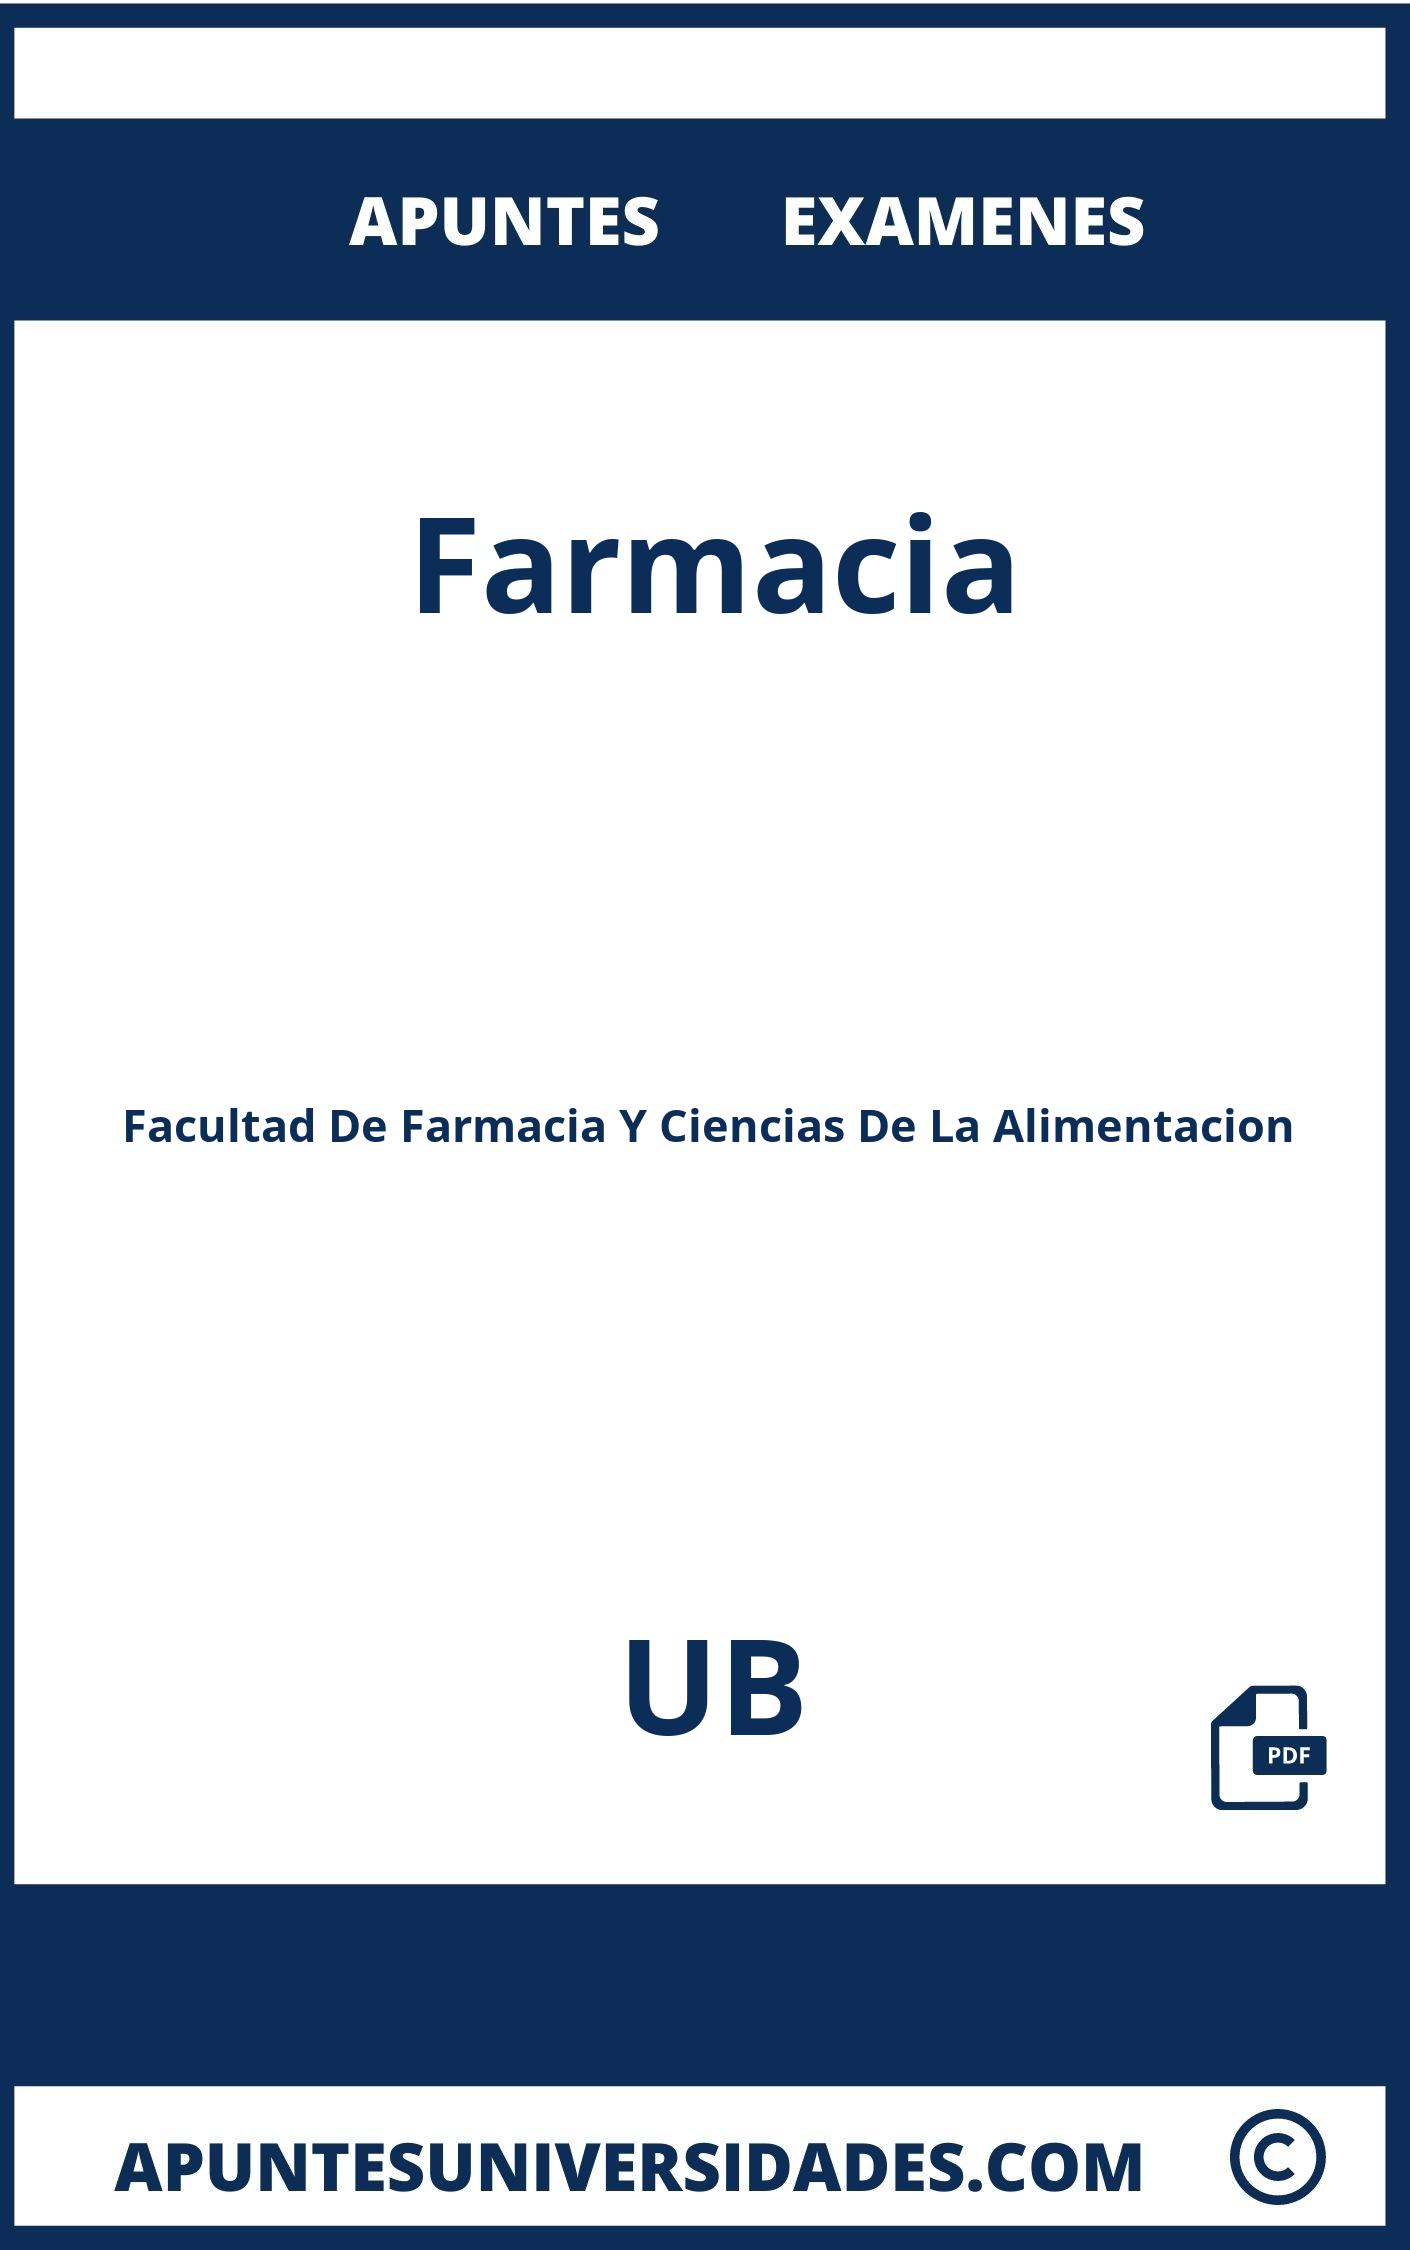 Examenes y Apuntes Farmacia UB